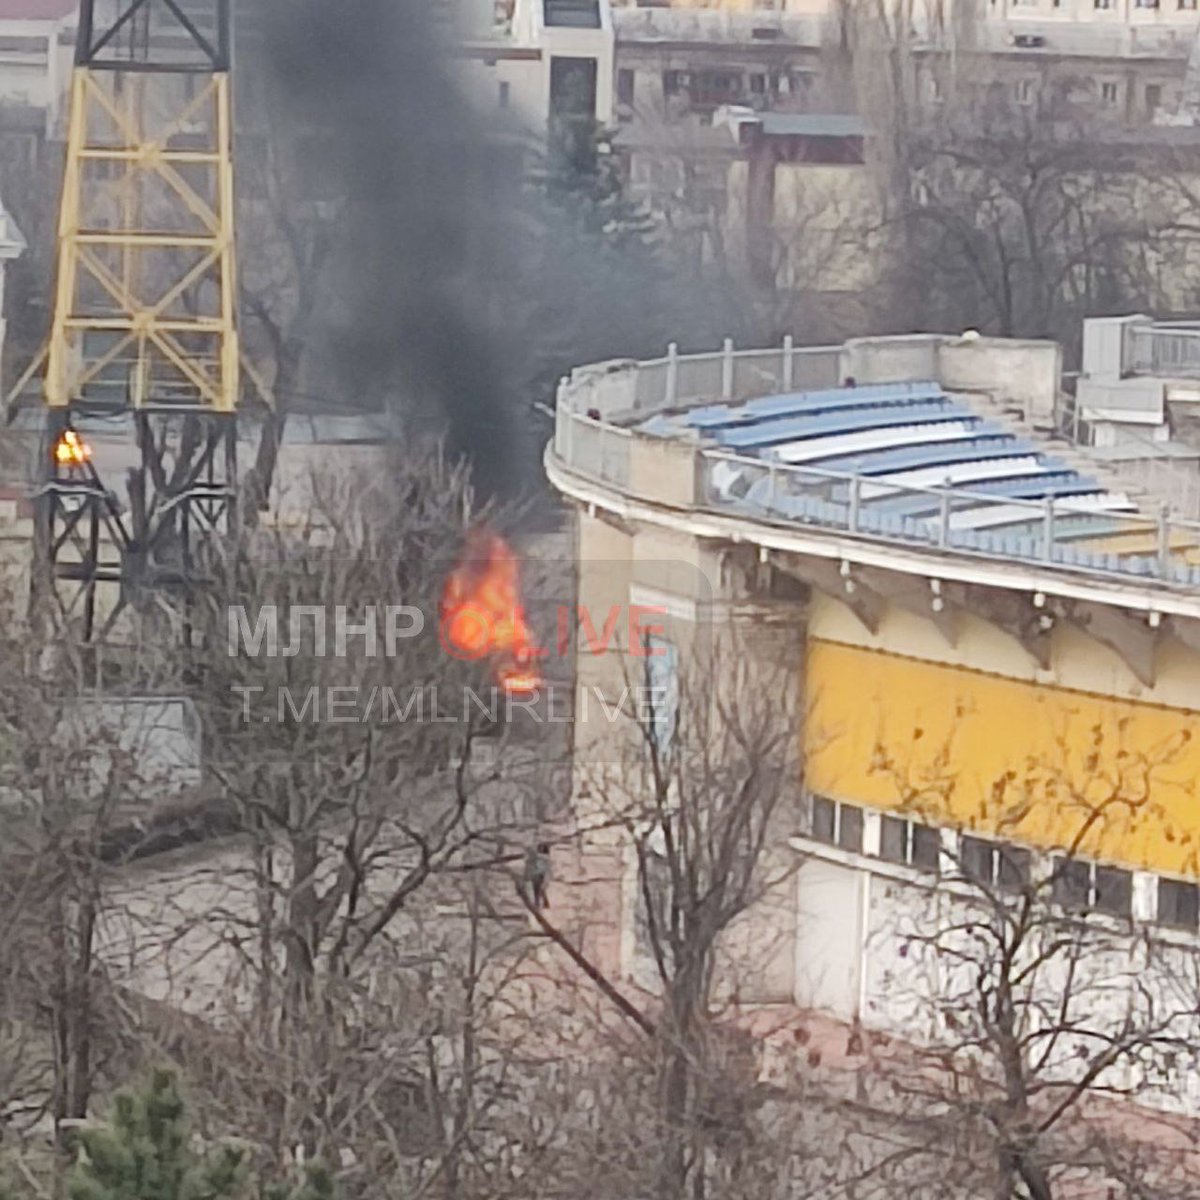 Un vehicle va explotar al centre de Luhansk